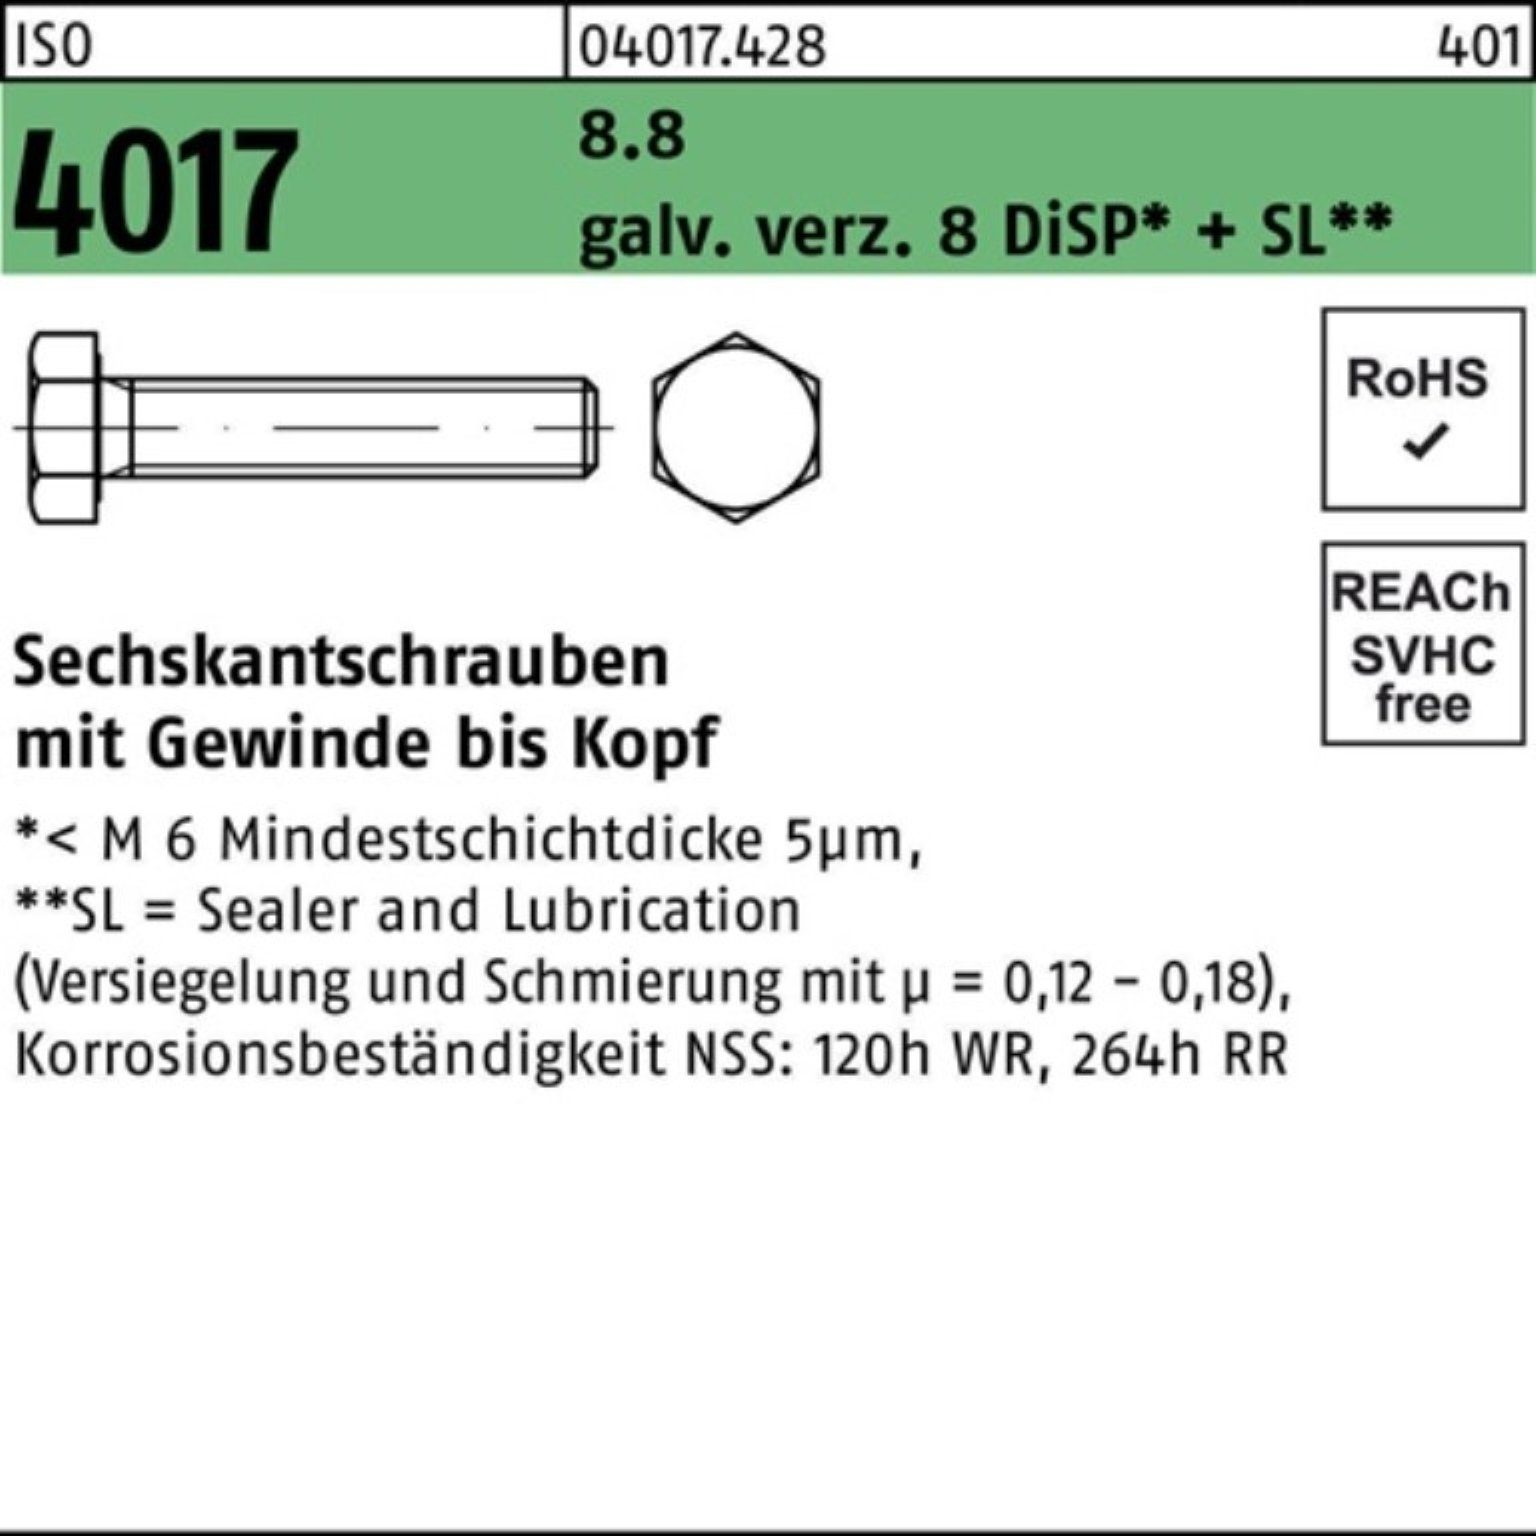 M24x 100er 4017 galv.verz. Sechskantschraube DiSP 60 8.8 VG 8 Pack Sechskantschraube ISO Bufab